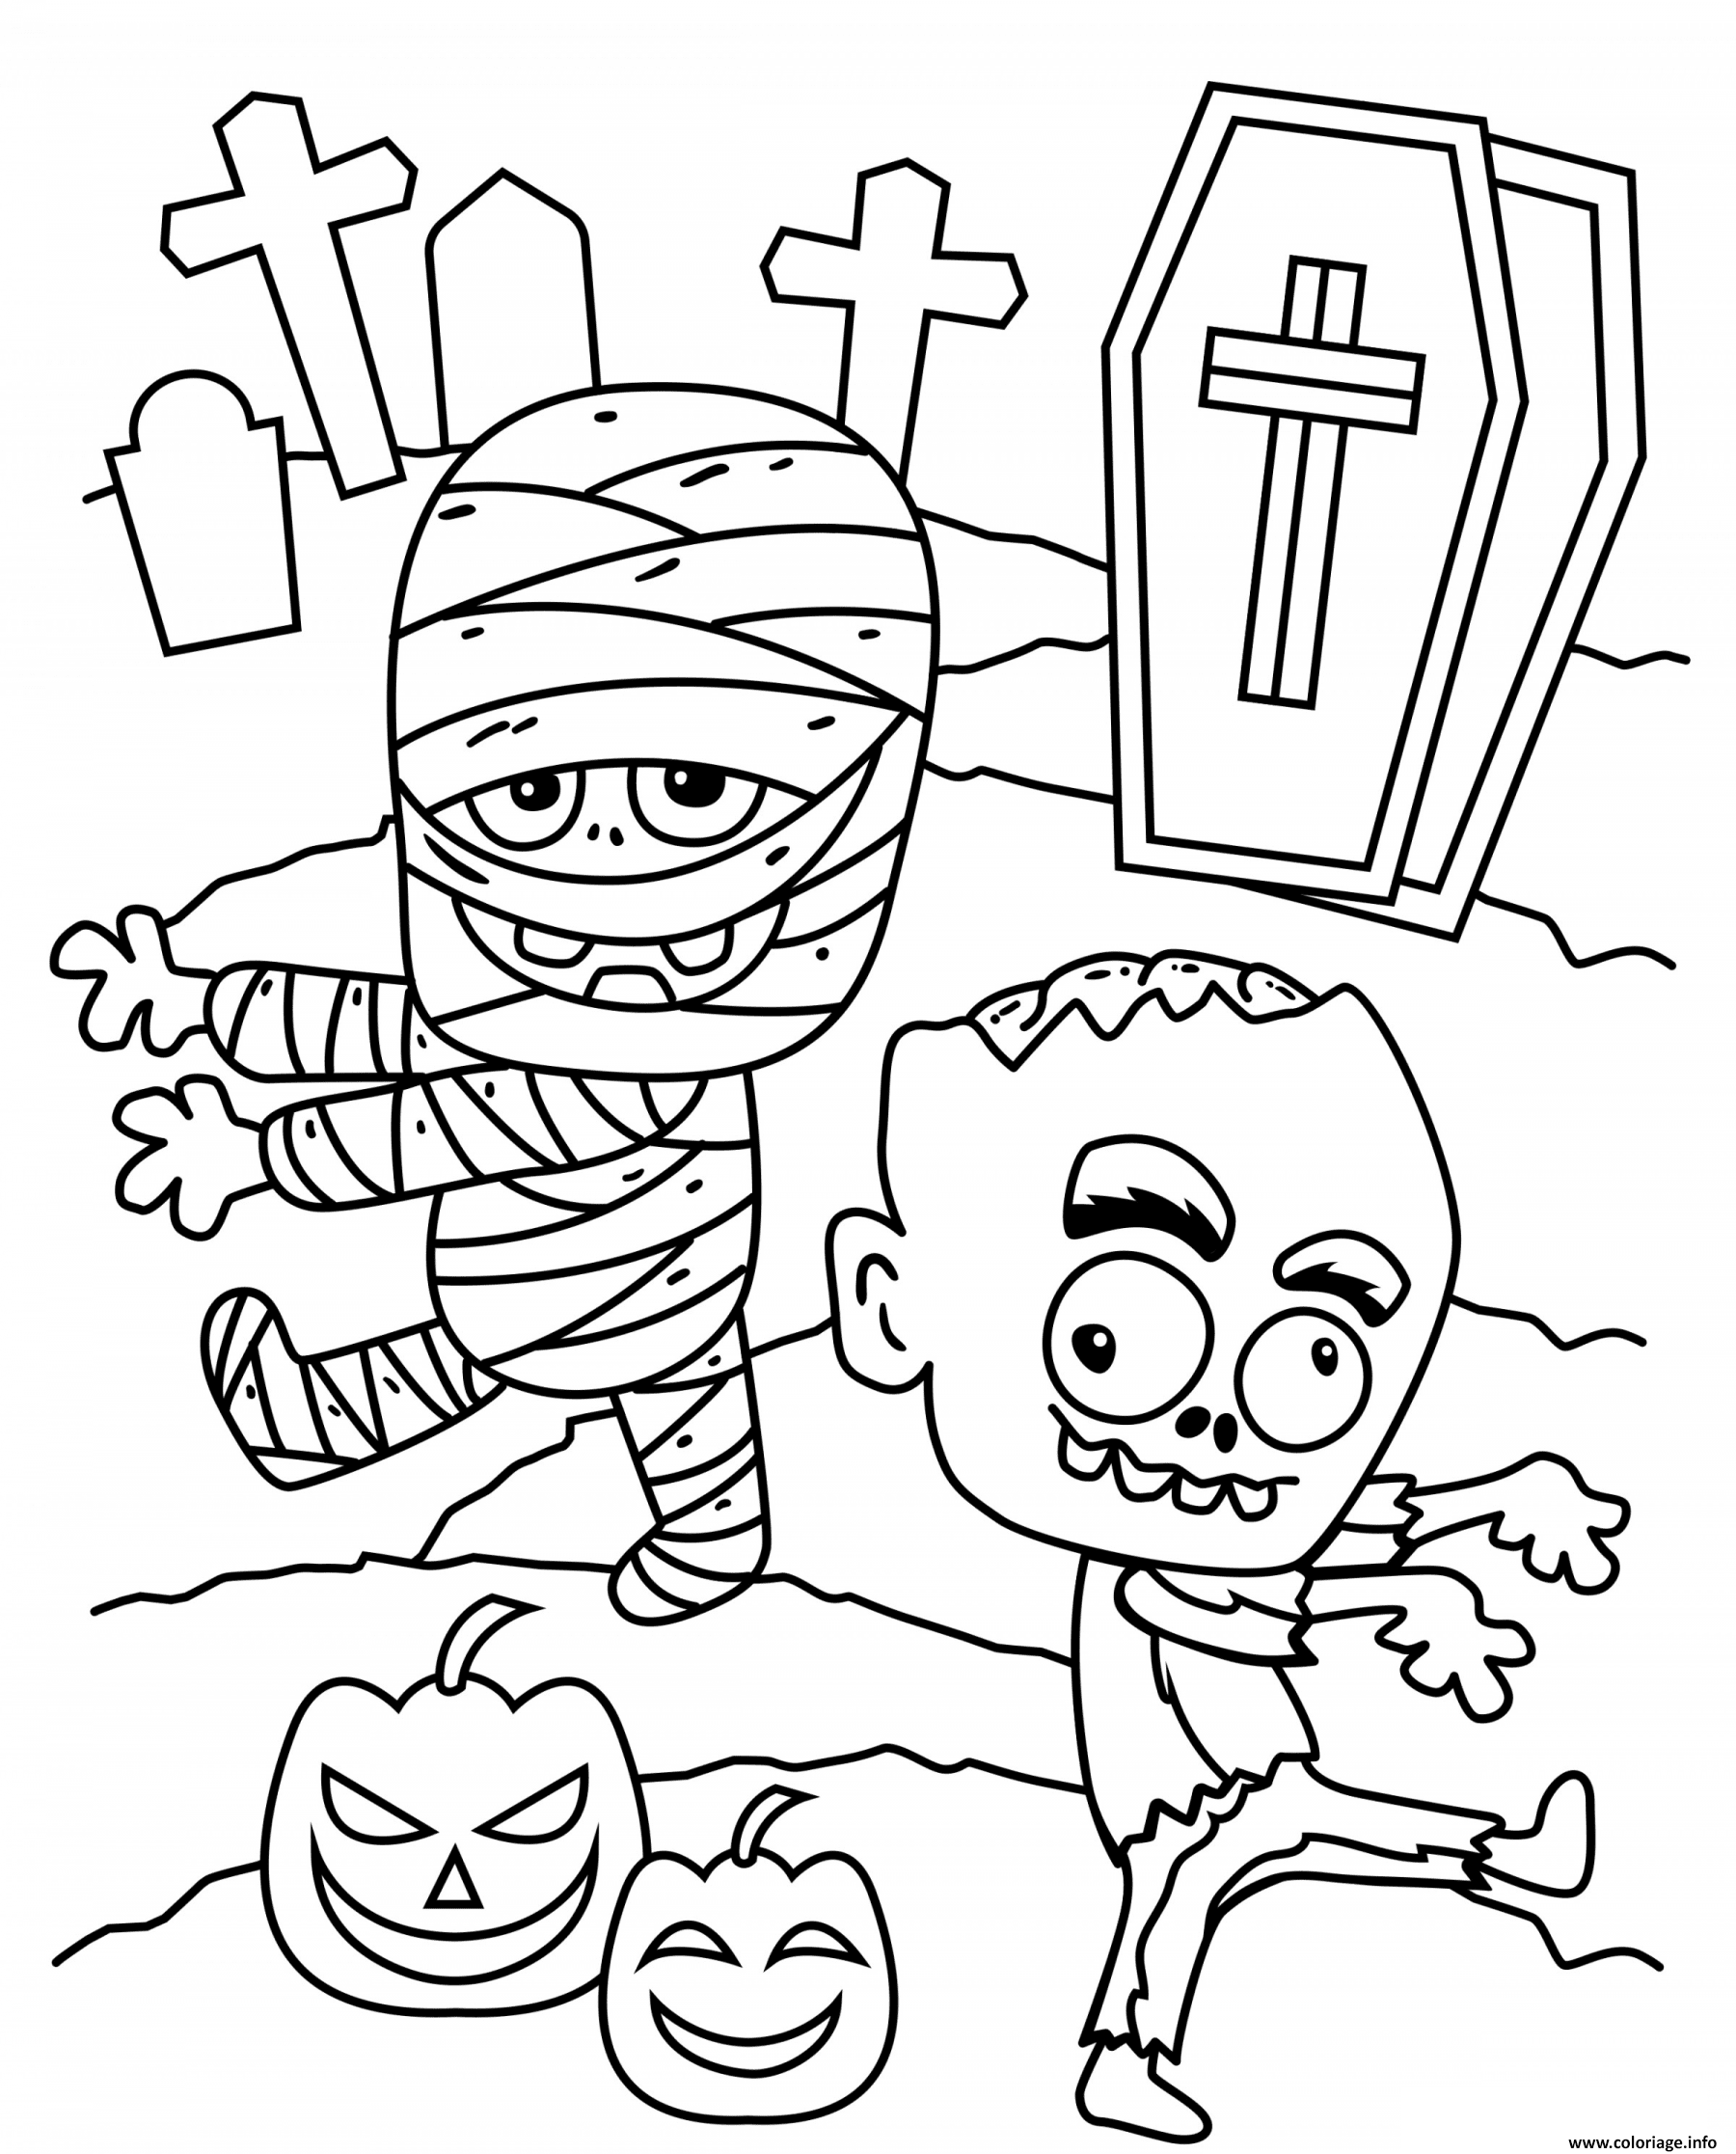 Desenhos de Halloween para colorir - Desenhos Para Desenhar